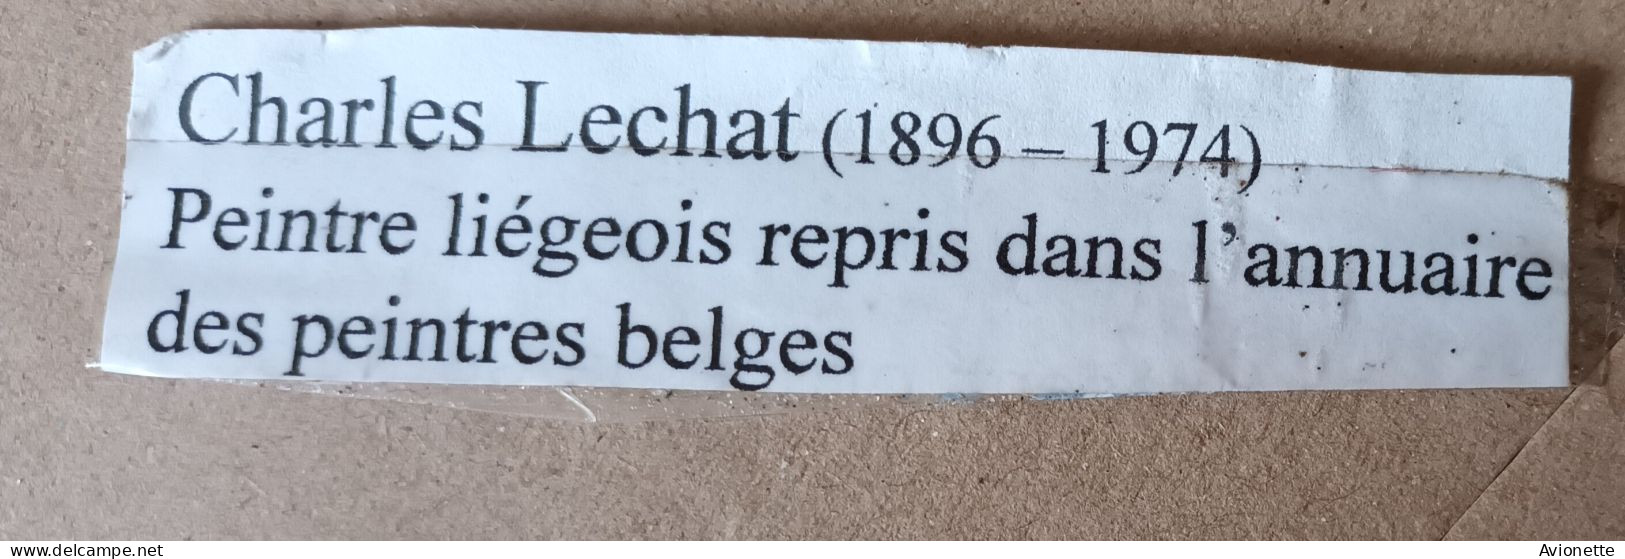 Croquis Dessin Championnat De France De Boules Casablanca 1951 / Charles Lechat / 26 X 35,5 CM - Disegni